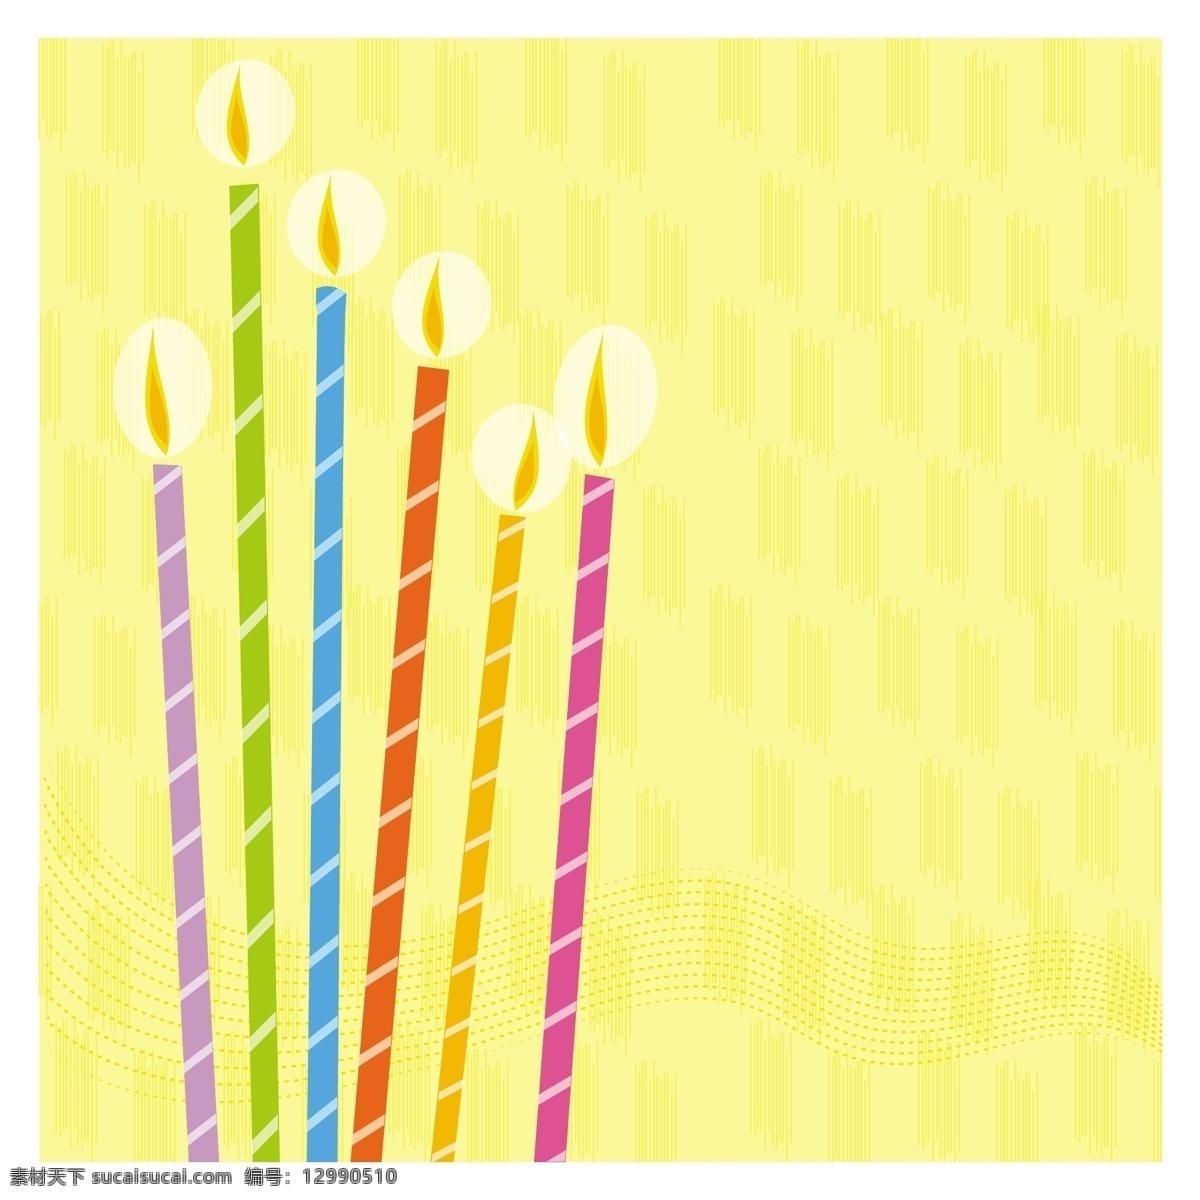 卡通 蜡烛 生日 生日蜡烛 生日蜡烛矢量 剪贴 画 矢量 图像 生日蜡烛自由 生日蜡烛夹 生日卡 其他矢量图